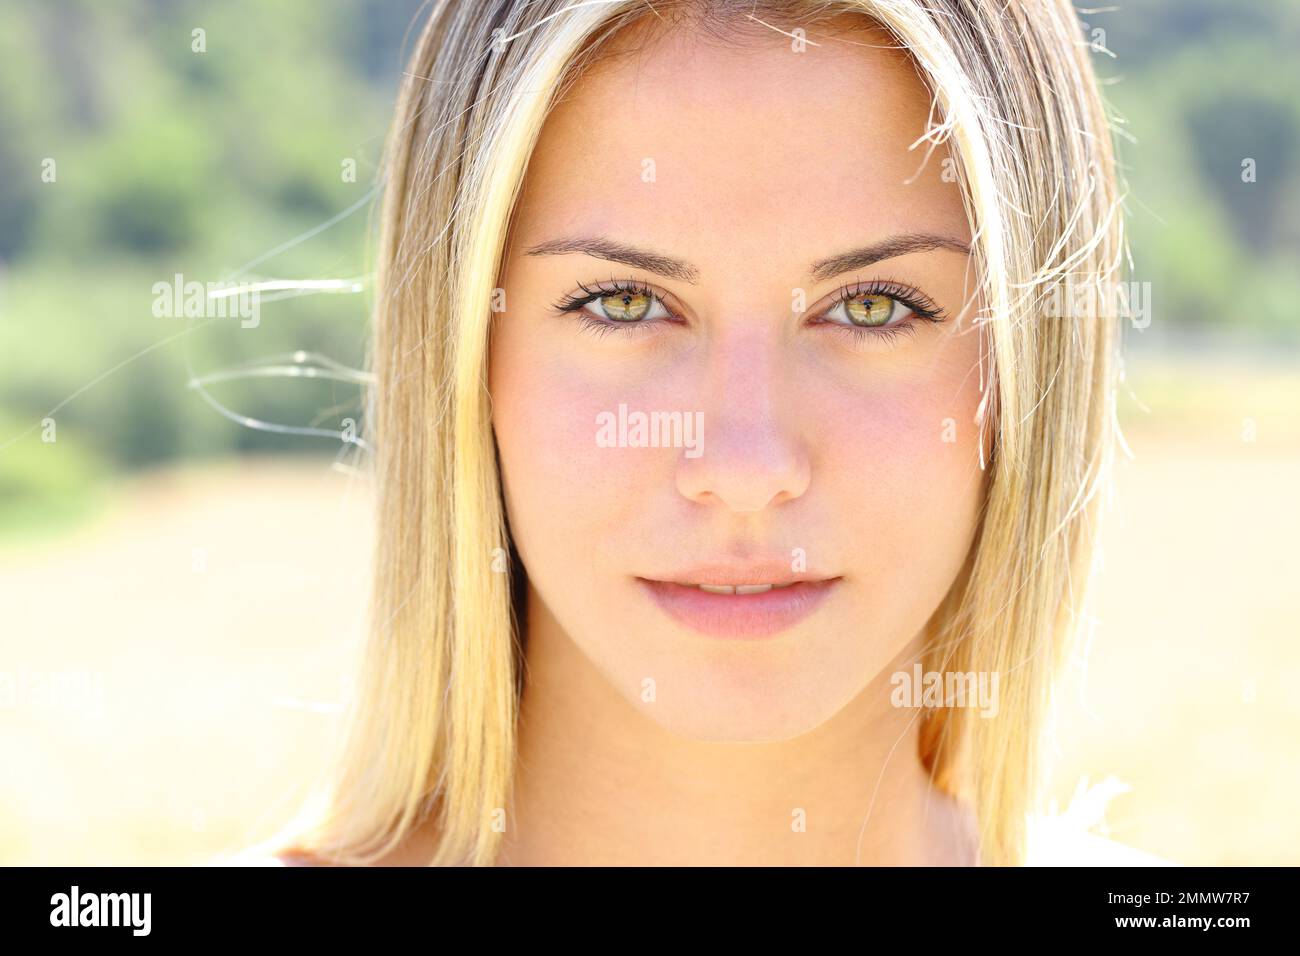 Vorderansicht Porträt einer schönen Frau mit grünen Augen, die in die Kamera schaut Stockfoto